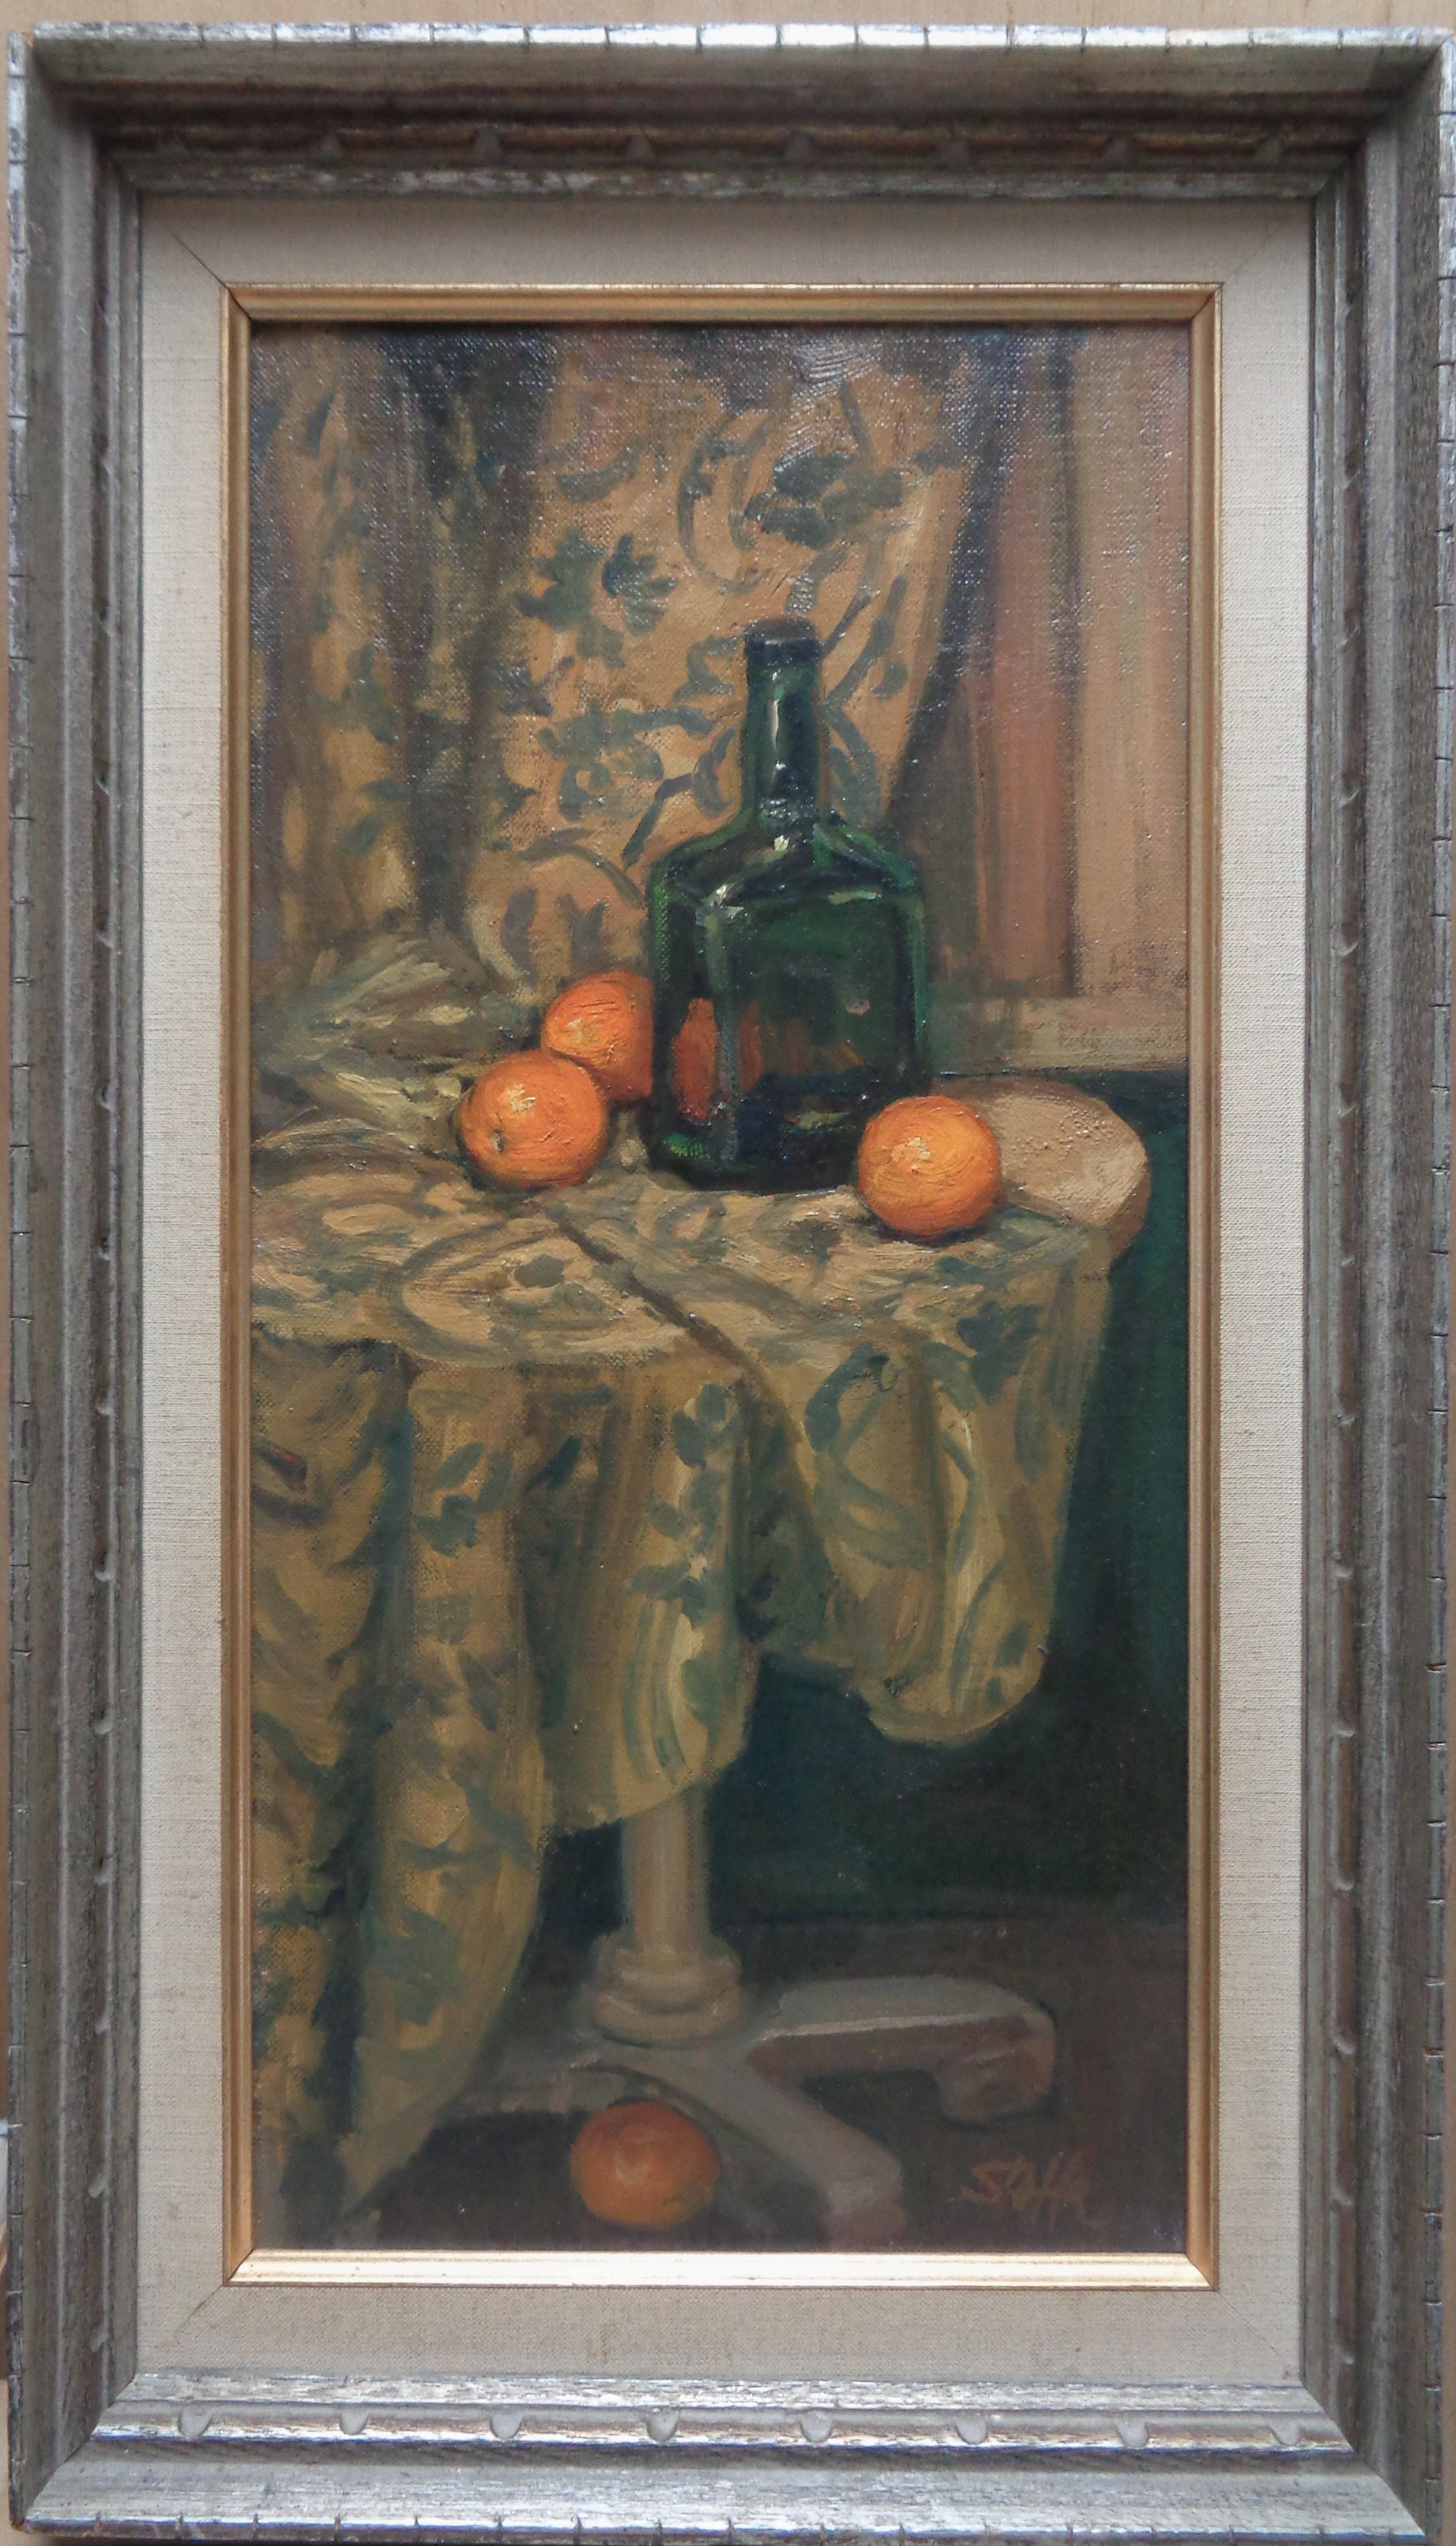 Michael Stoffa (américain, 1923-2001)  (Rockport, MA)
"Vivre encore avec des oranges"
Huile sur panneau, signée en bas à droite
Peinture :  environ 8" x 16"
La peinture a besoin d'être nettoyée et n'est pas aussi brillante.  et claire, comme